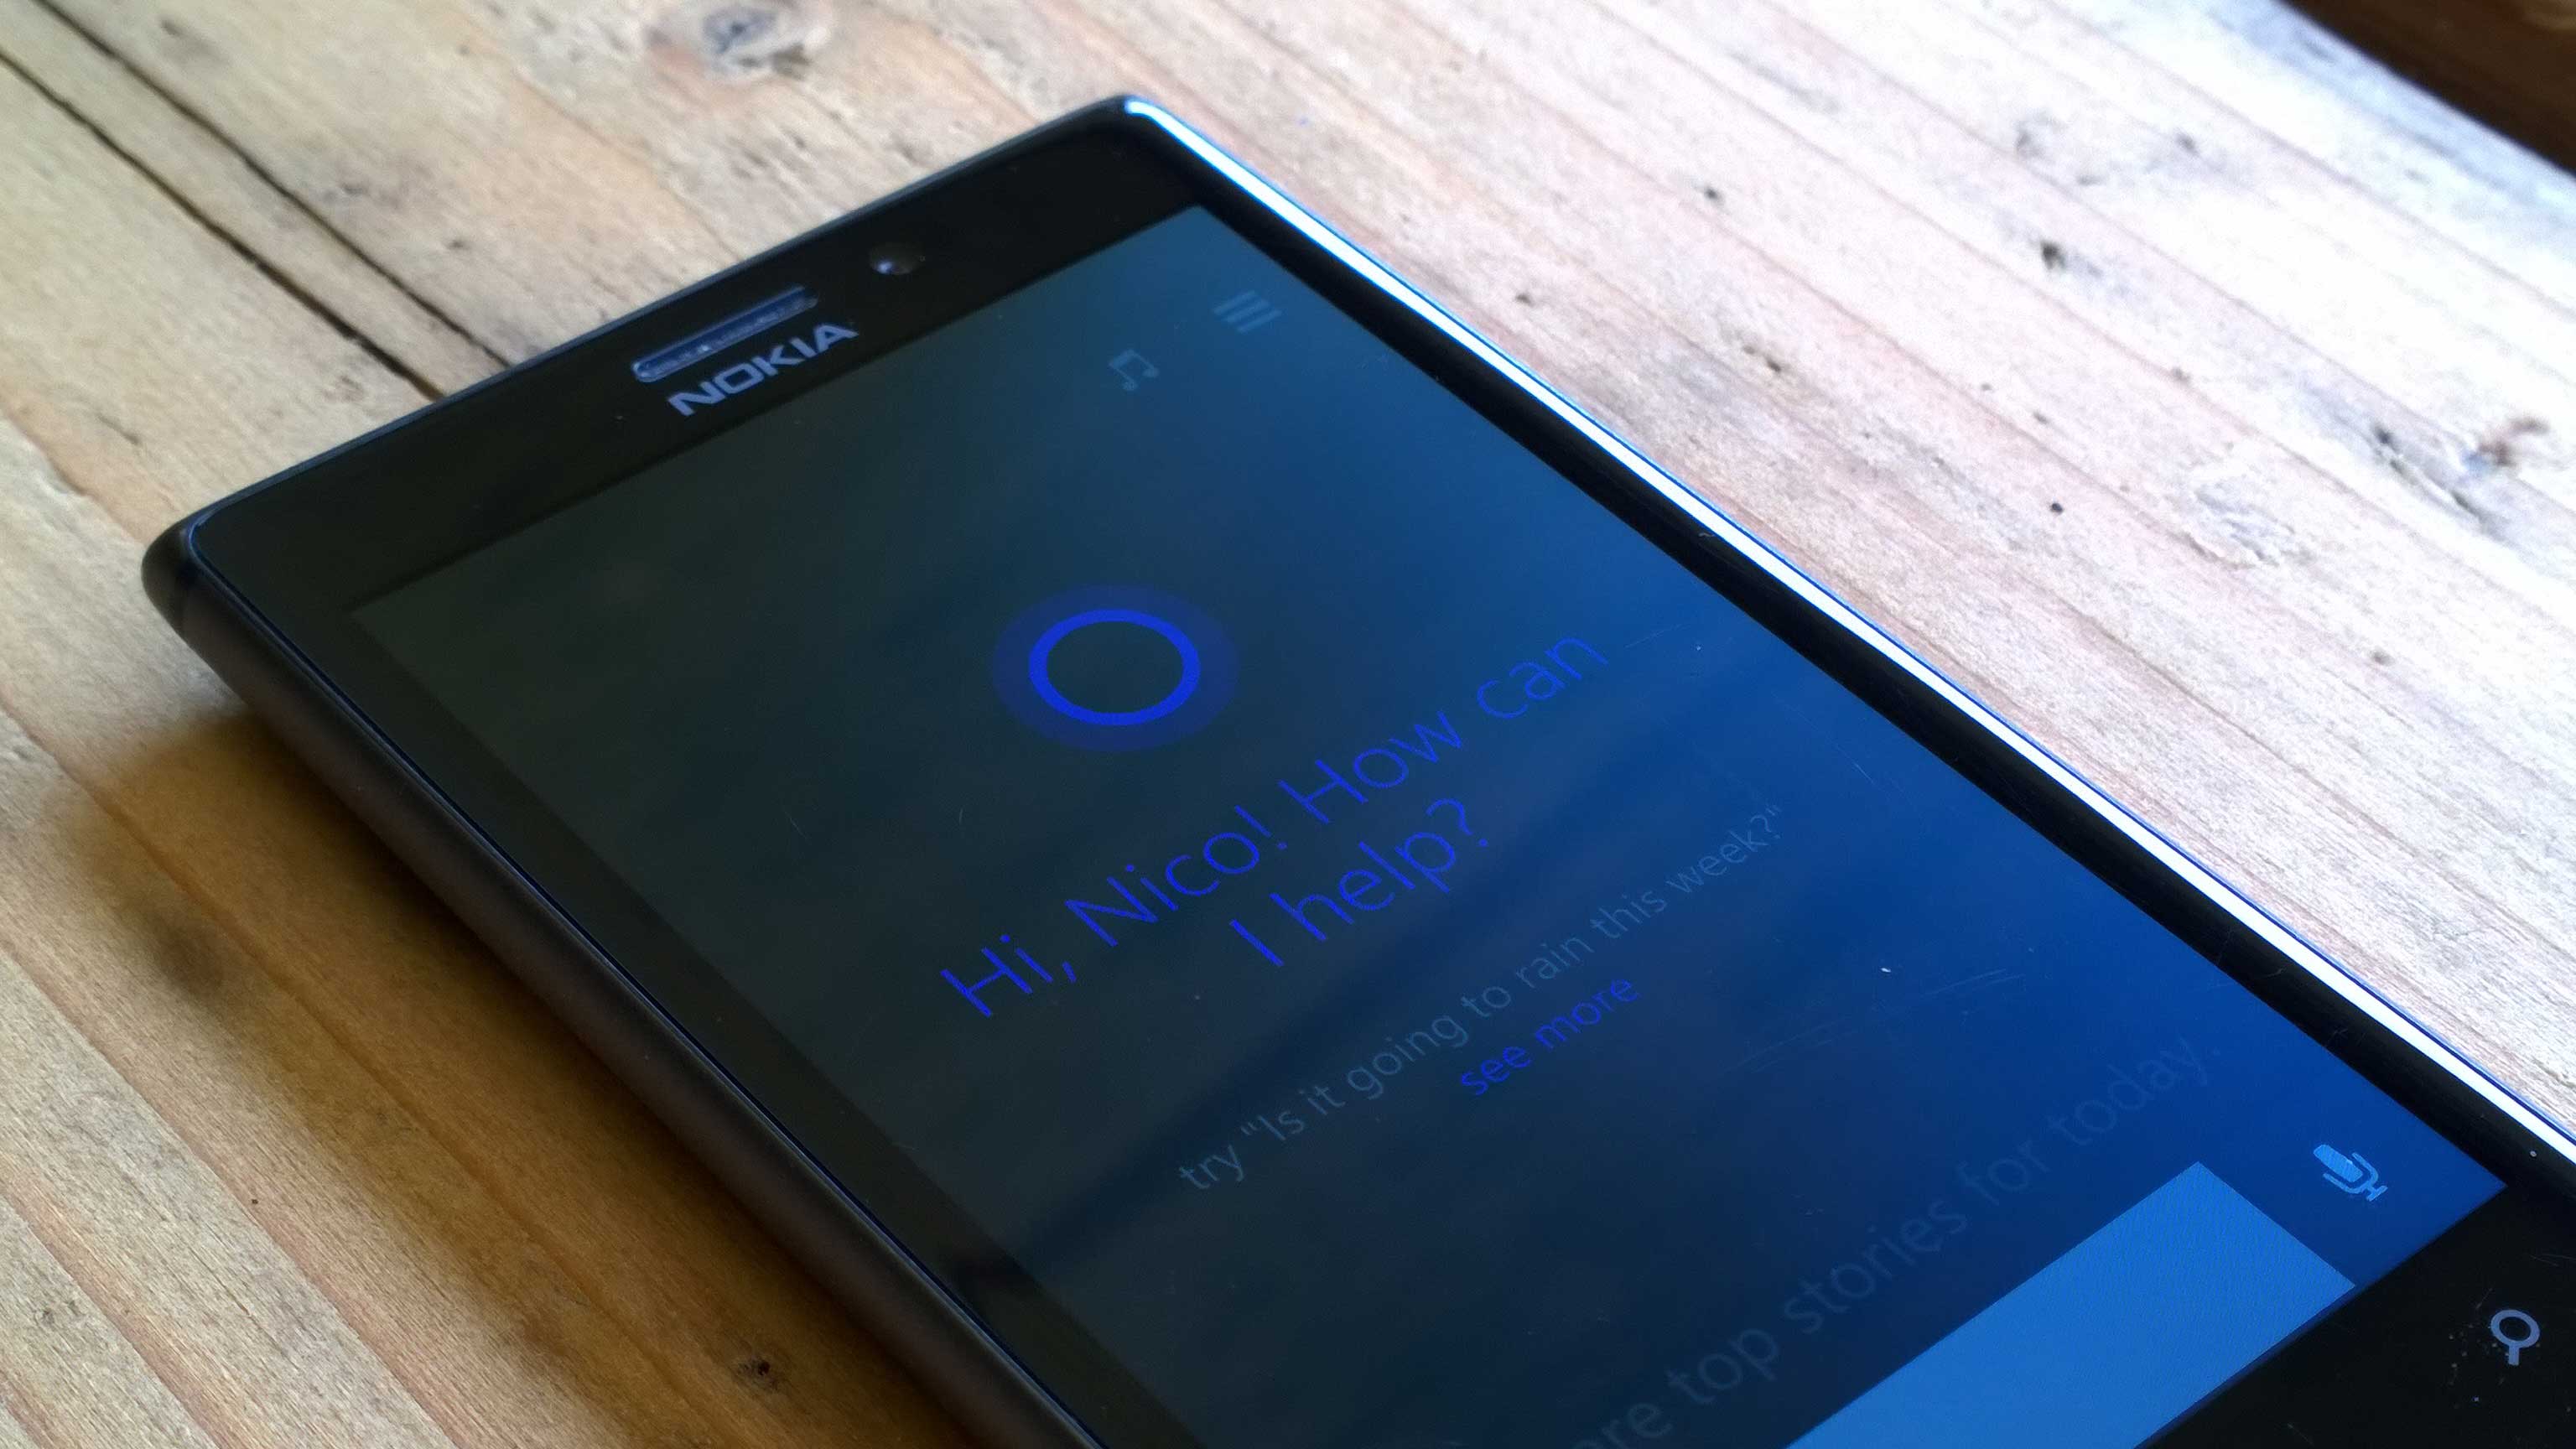 Cortana01